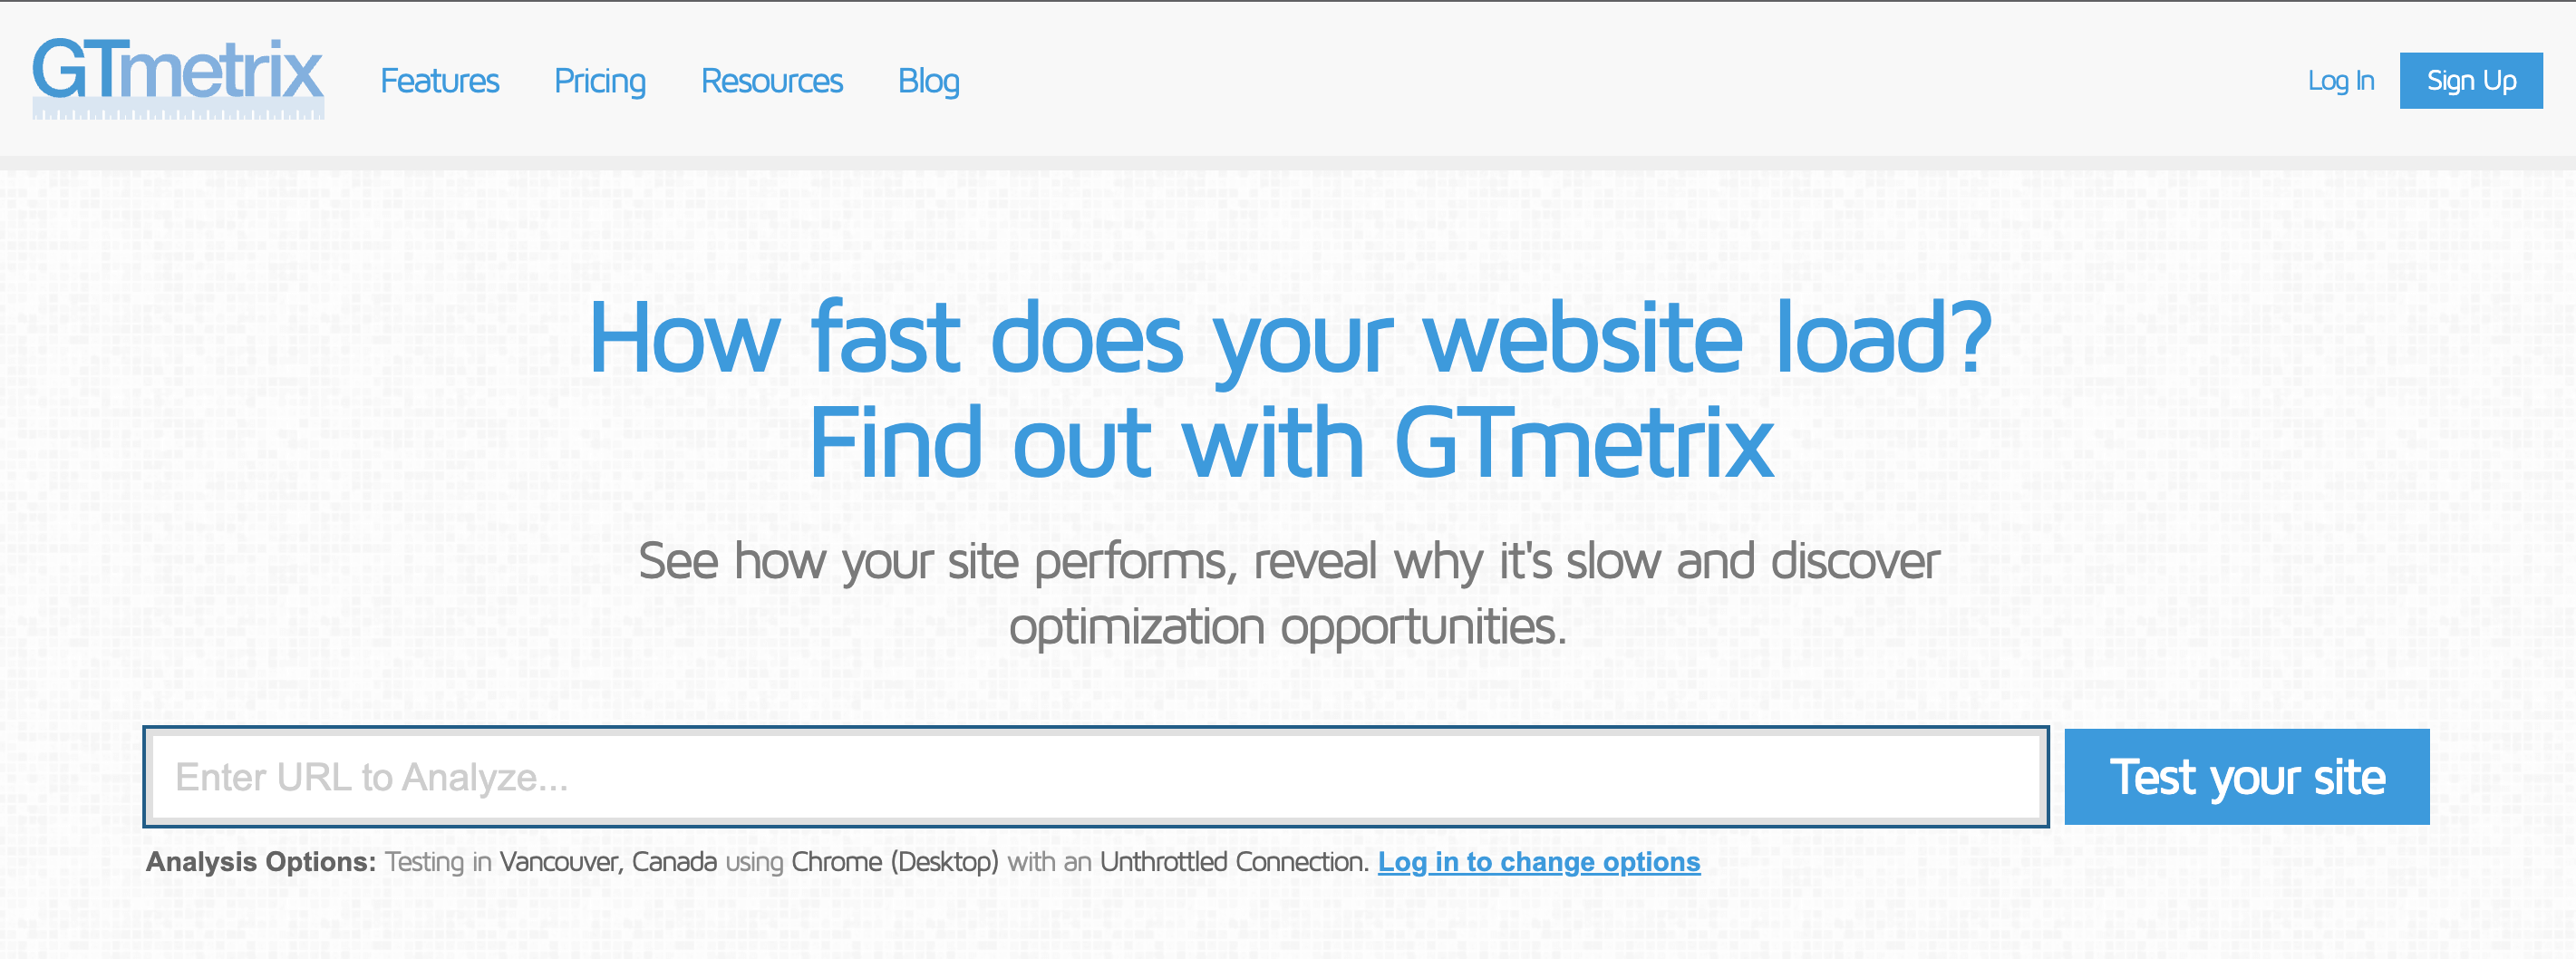 The homepage for GTmetrix